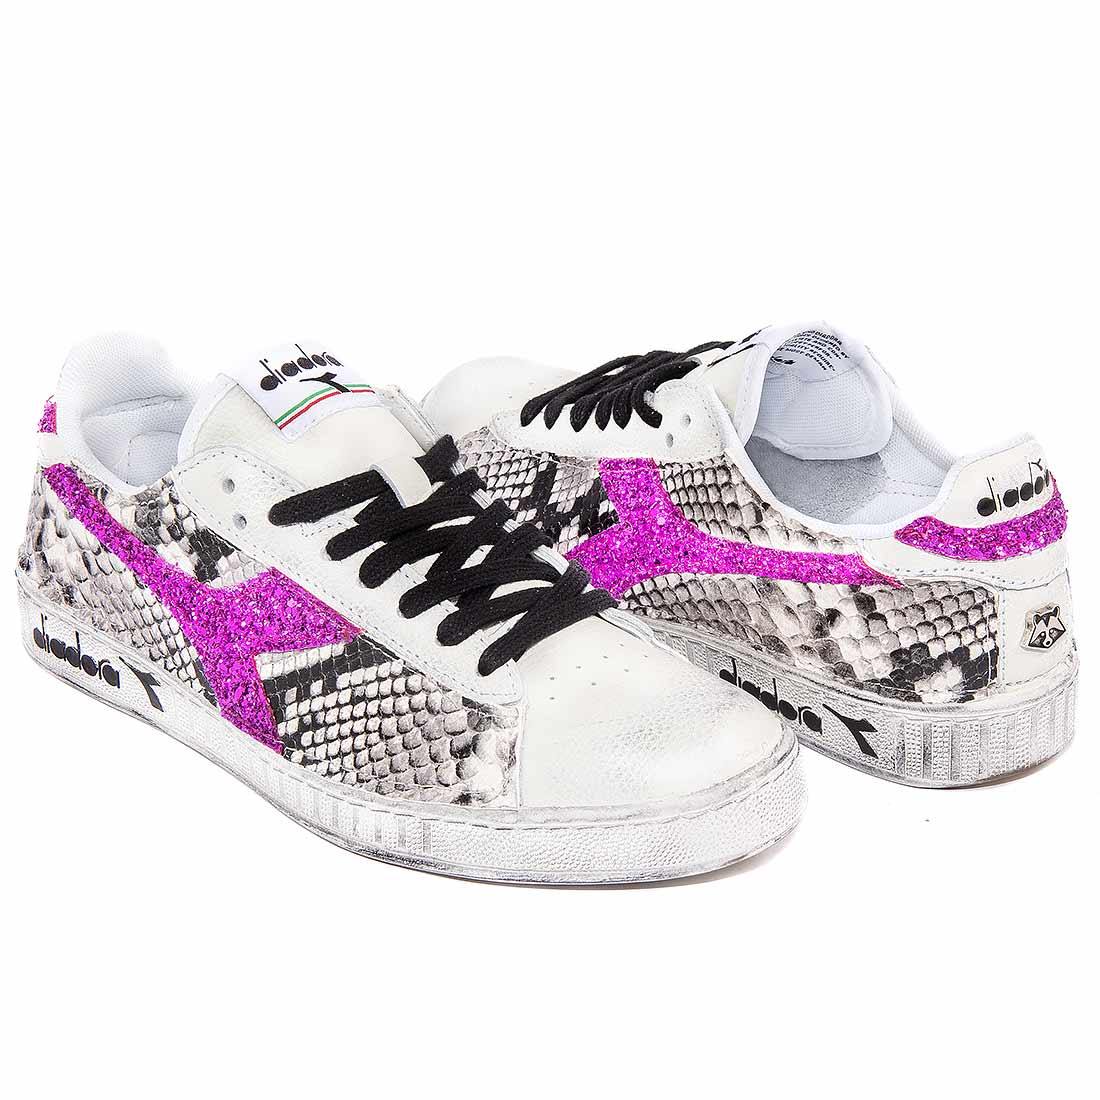 Sneakers Diadora Game low animalier pitone pitonate con glitter glitterate fucsia fluo fuxia